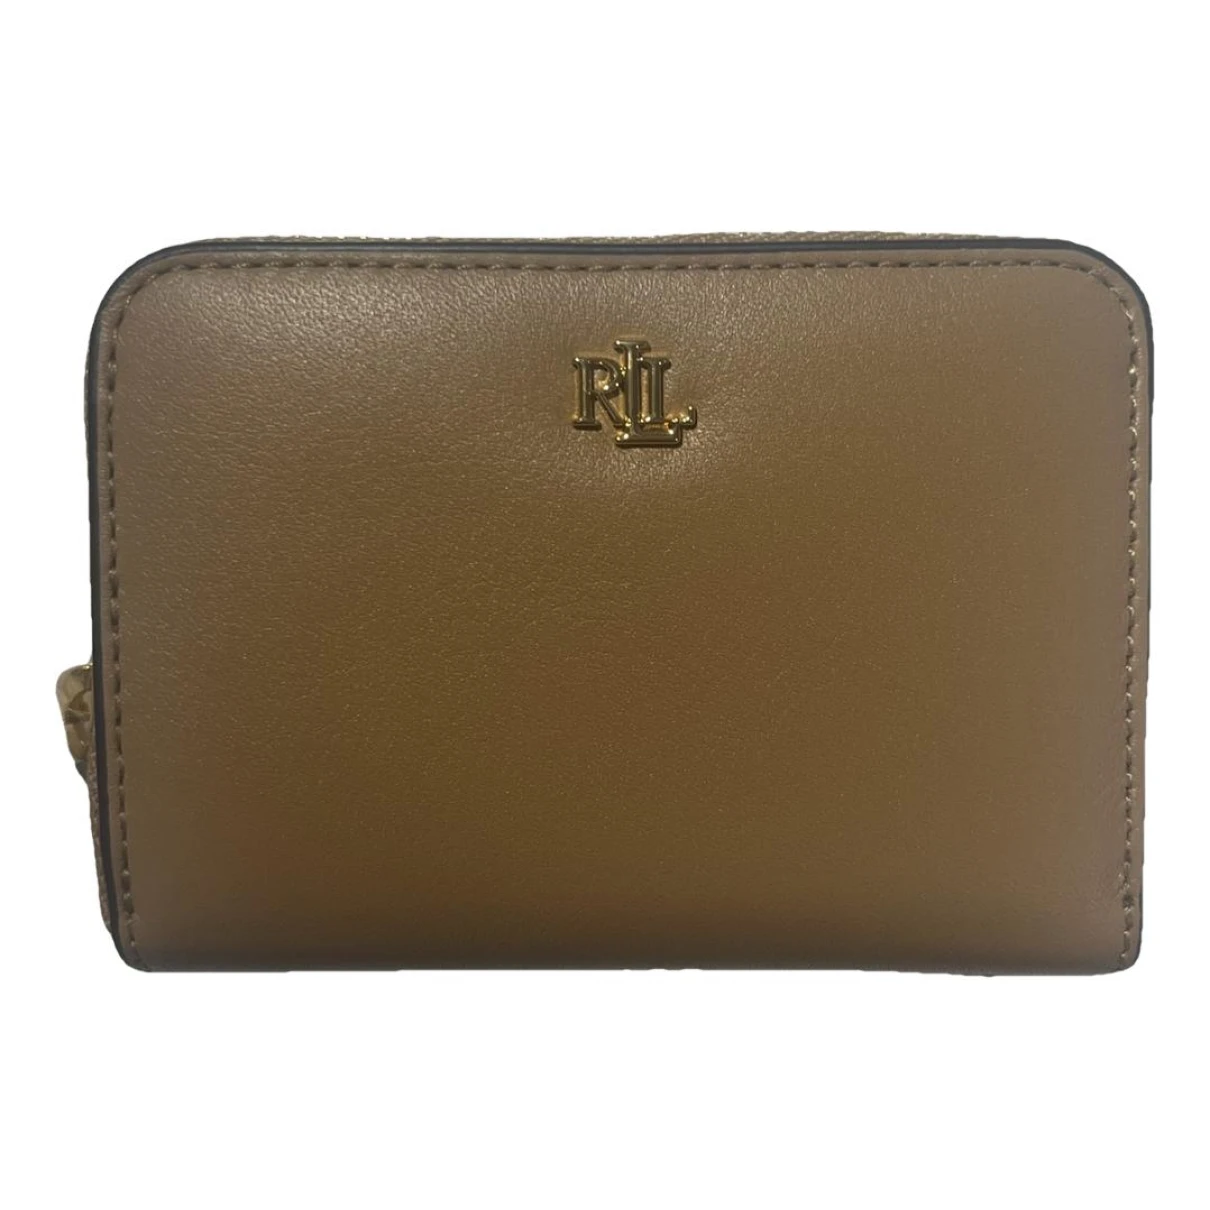 Pre-owned Lauren Ralph Lauren Leather Wallet In Camel